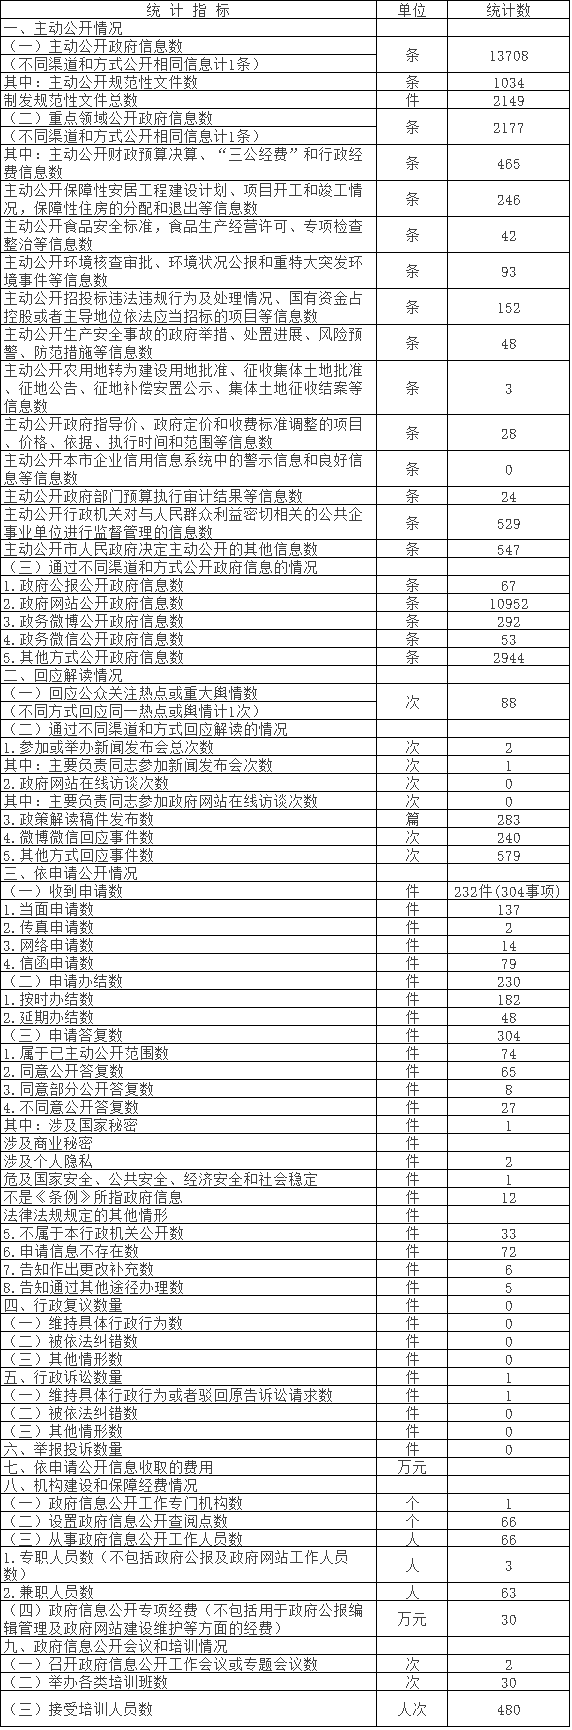 北京市密雲區人民政府信息公開情況統計表(2017年度)